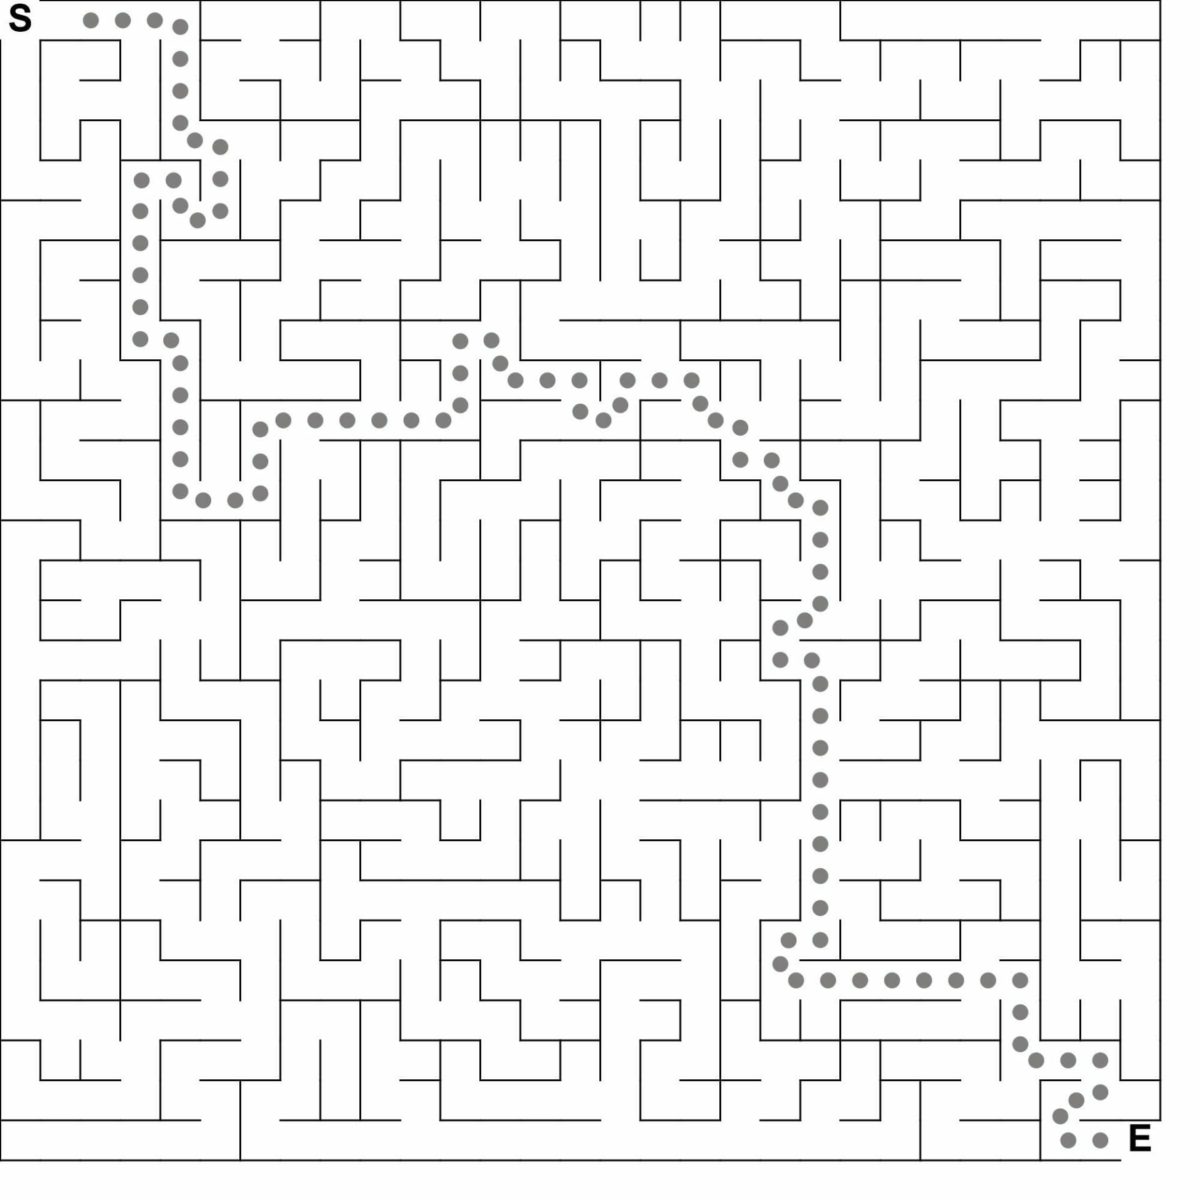 Puzzle Maker Pro maze solution image